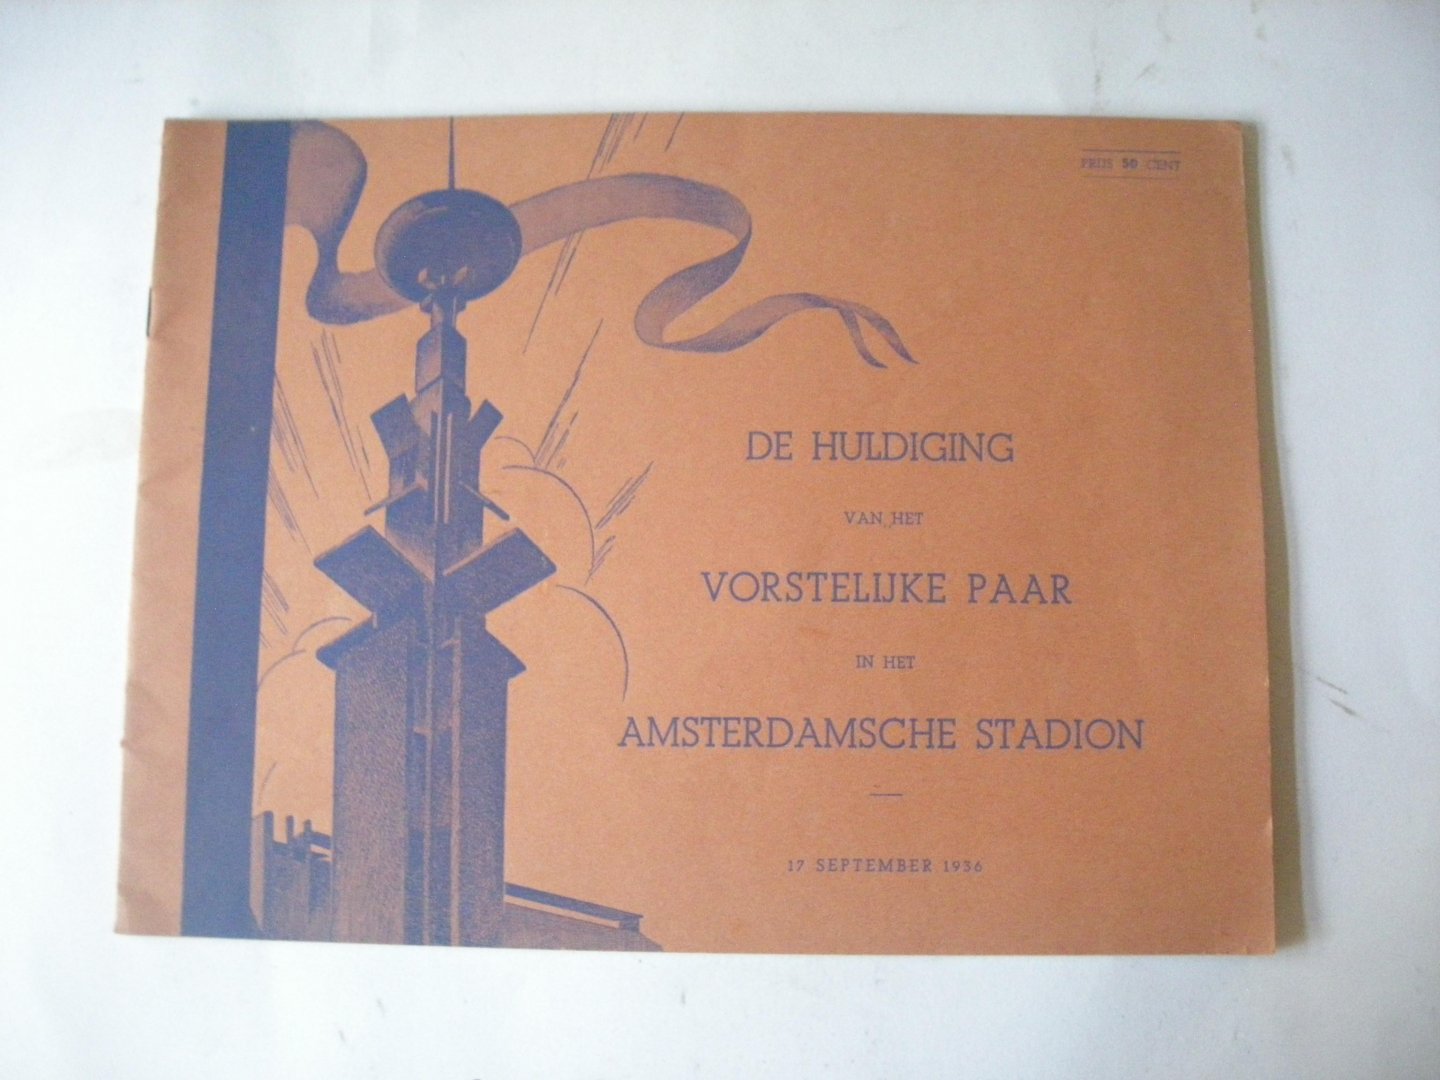 NN - De huldiging van het vorstelijke paar in het Amsterdamsche stadion.  H.K.H.Prinses Juliana en Z.H.Prins Bernhard tgv hun verloving 17 september 1936